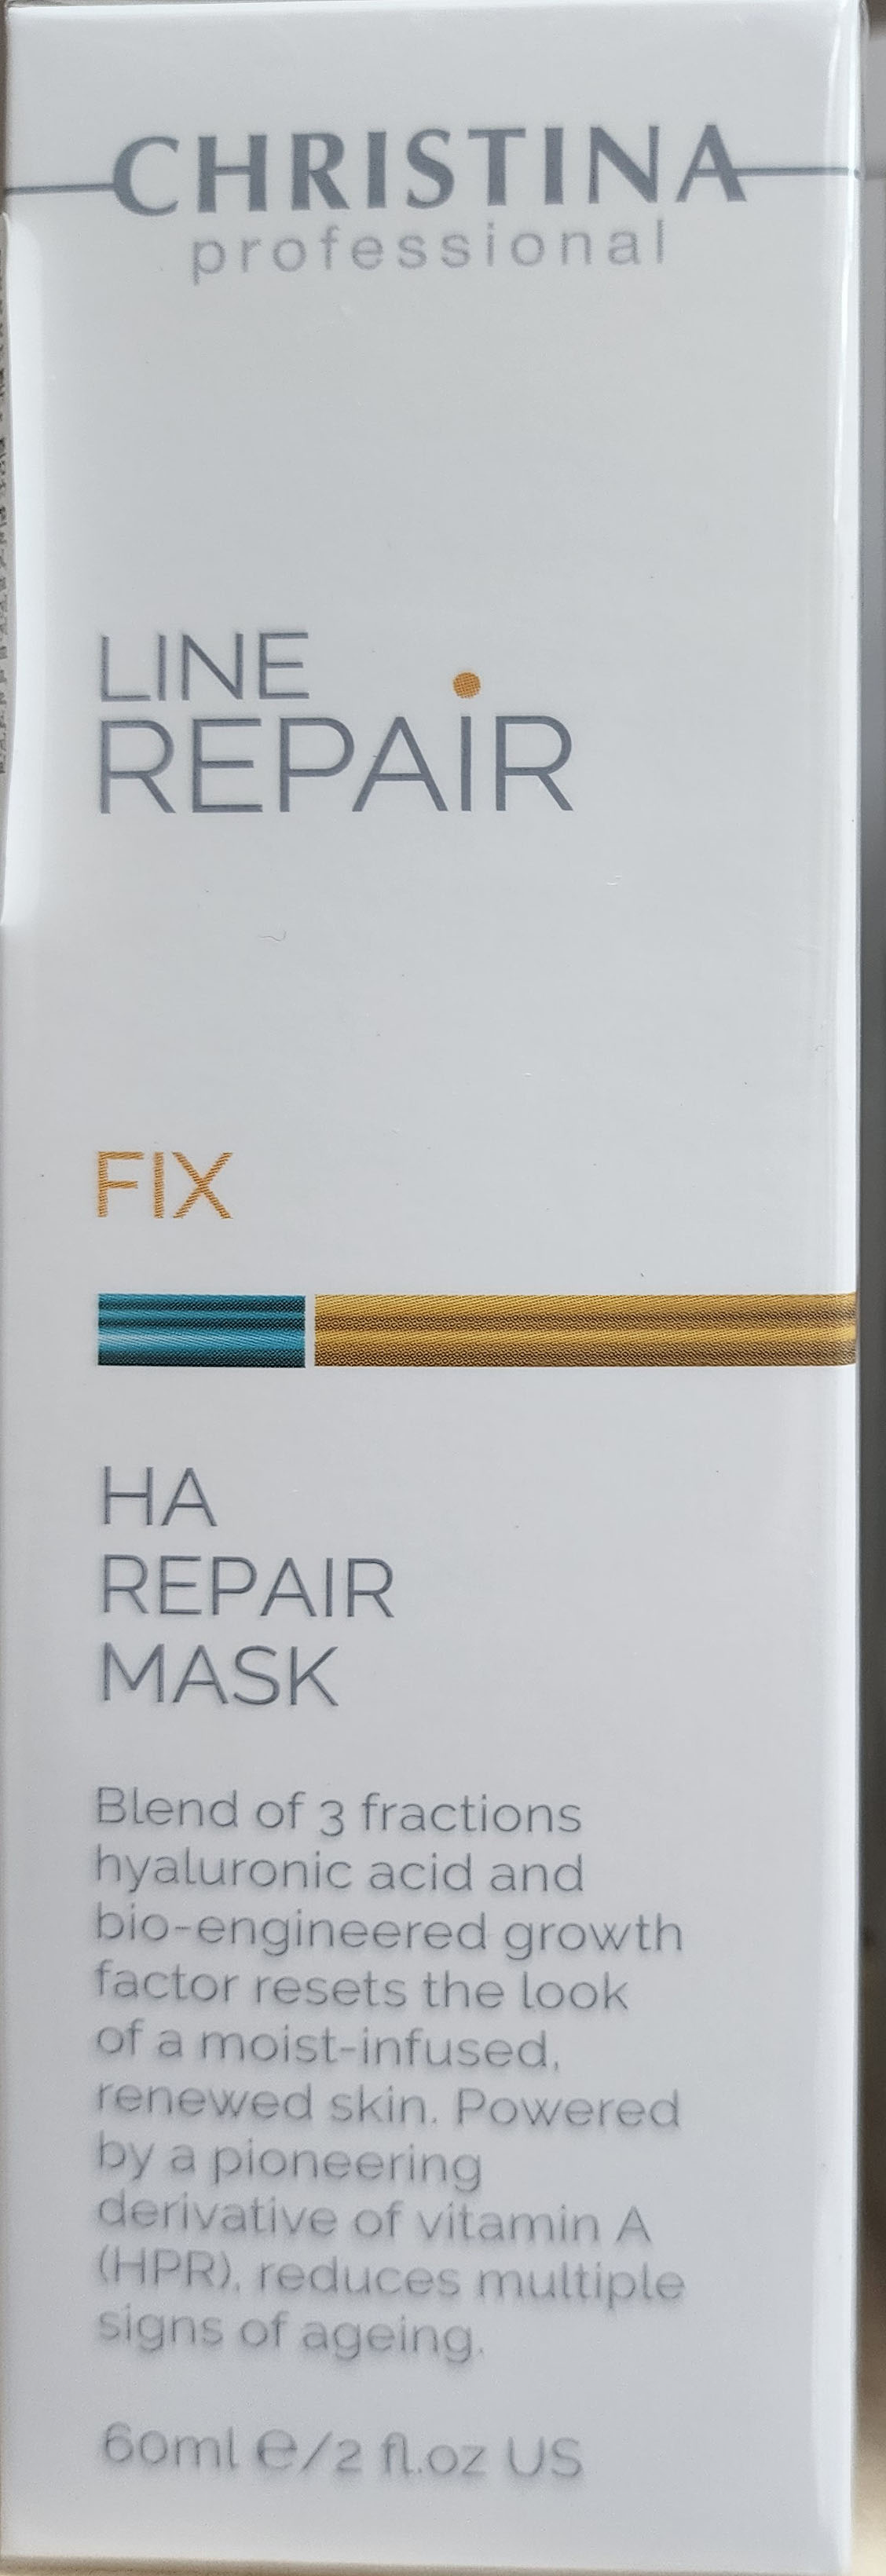 Christina Line Repair - Fix - Ha Repair Mask 60ml